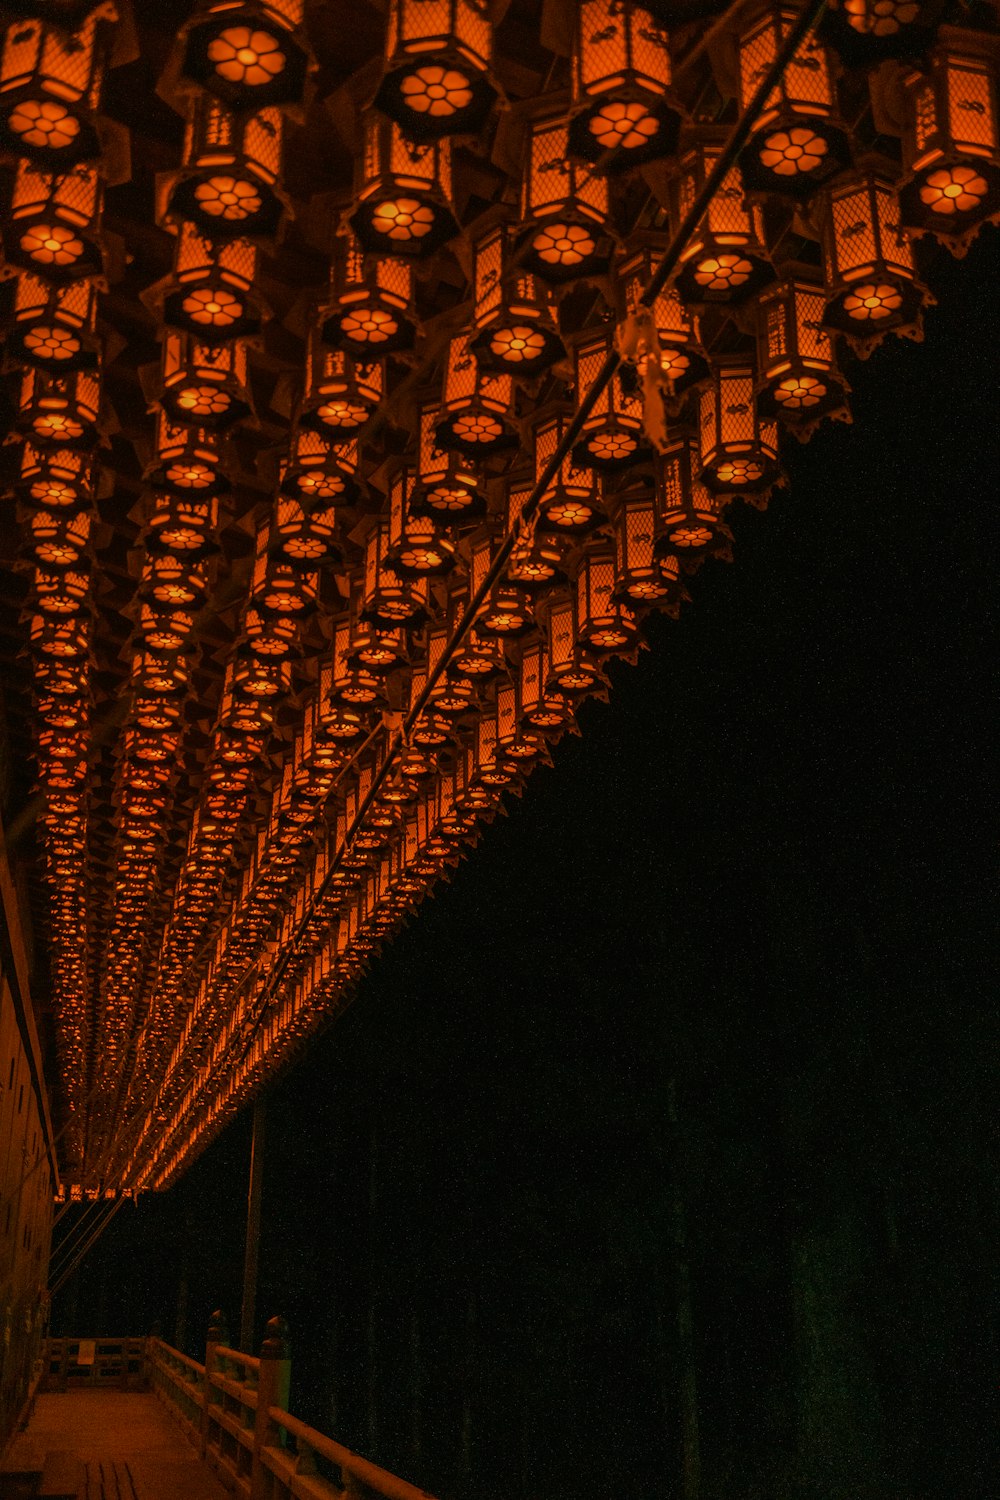 uma longa fila de lanternas iluminadas no escuro